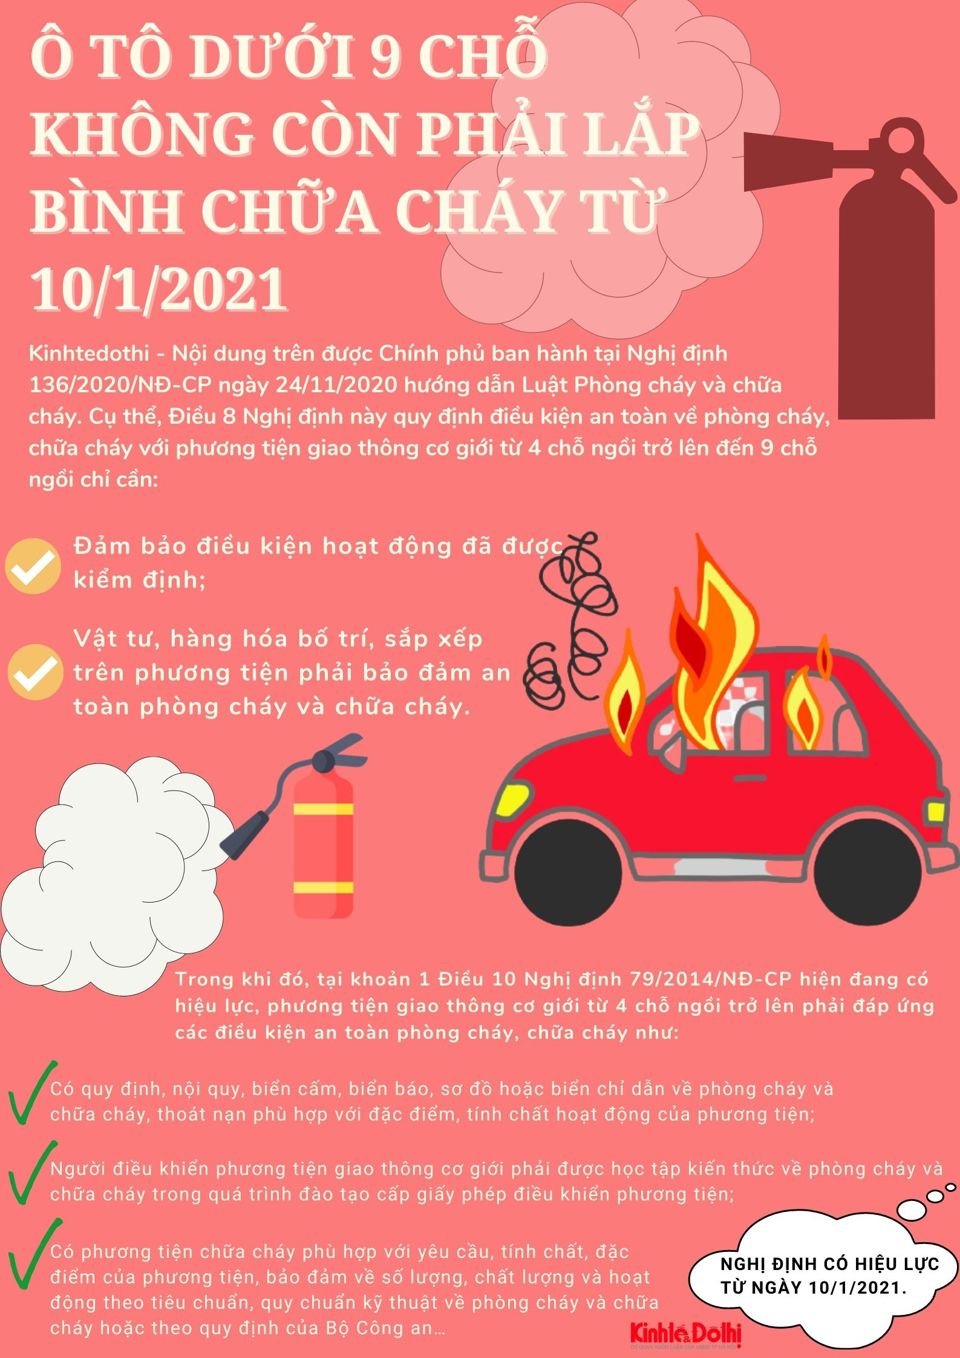 [Infographic] Từ 10/1/2021, xe ô tô dưới 9 chỗ không còn phải lắp bình chữa cháy - Ảnh 1